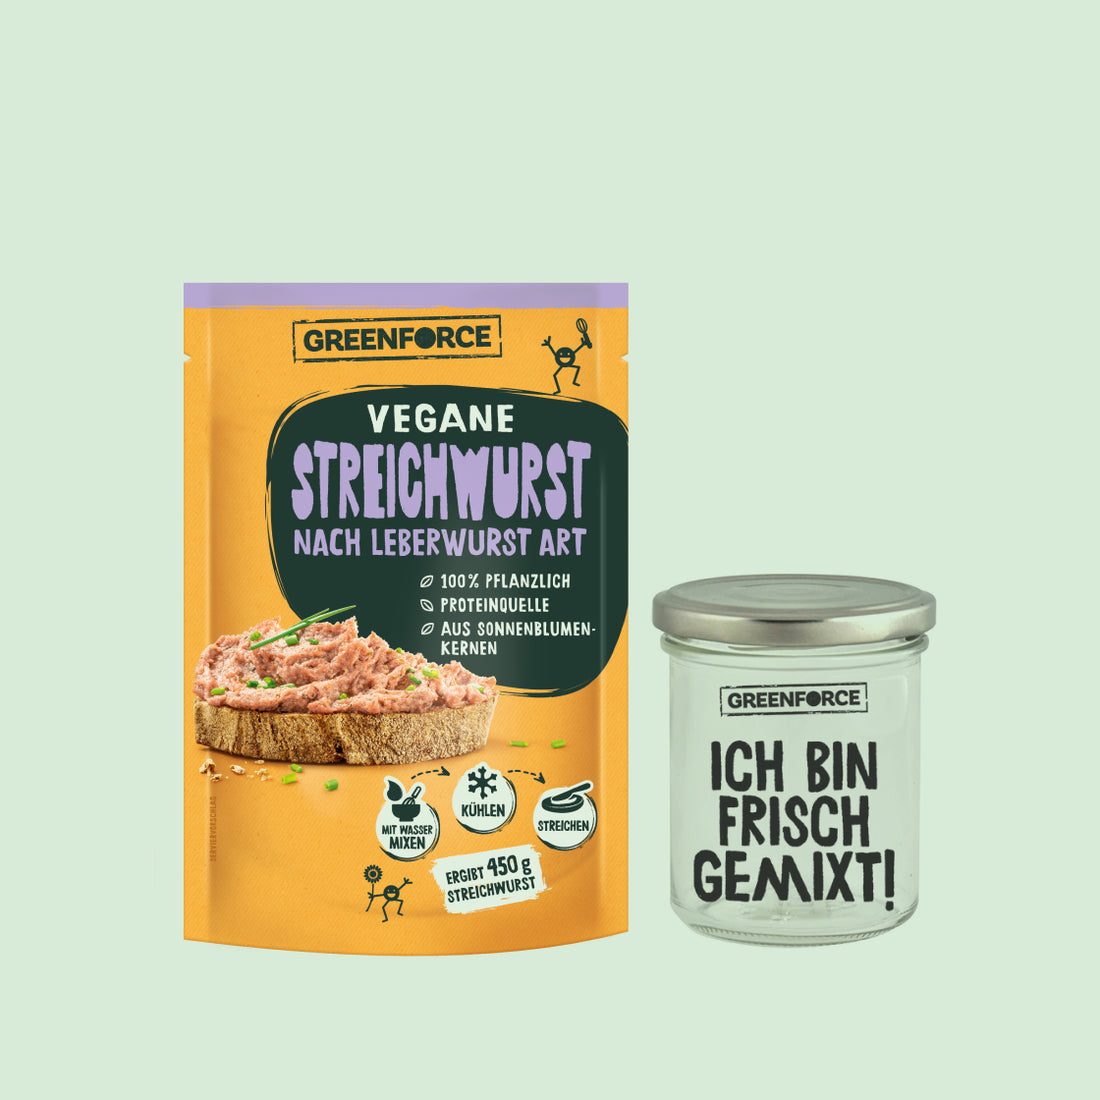 Vegane Streichwurst Starter Box